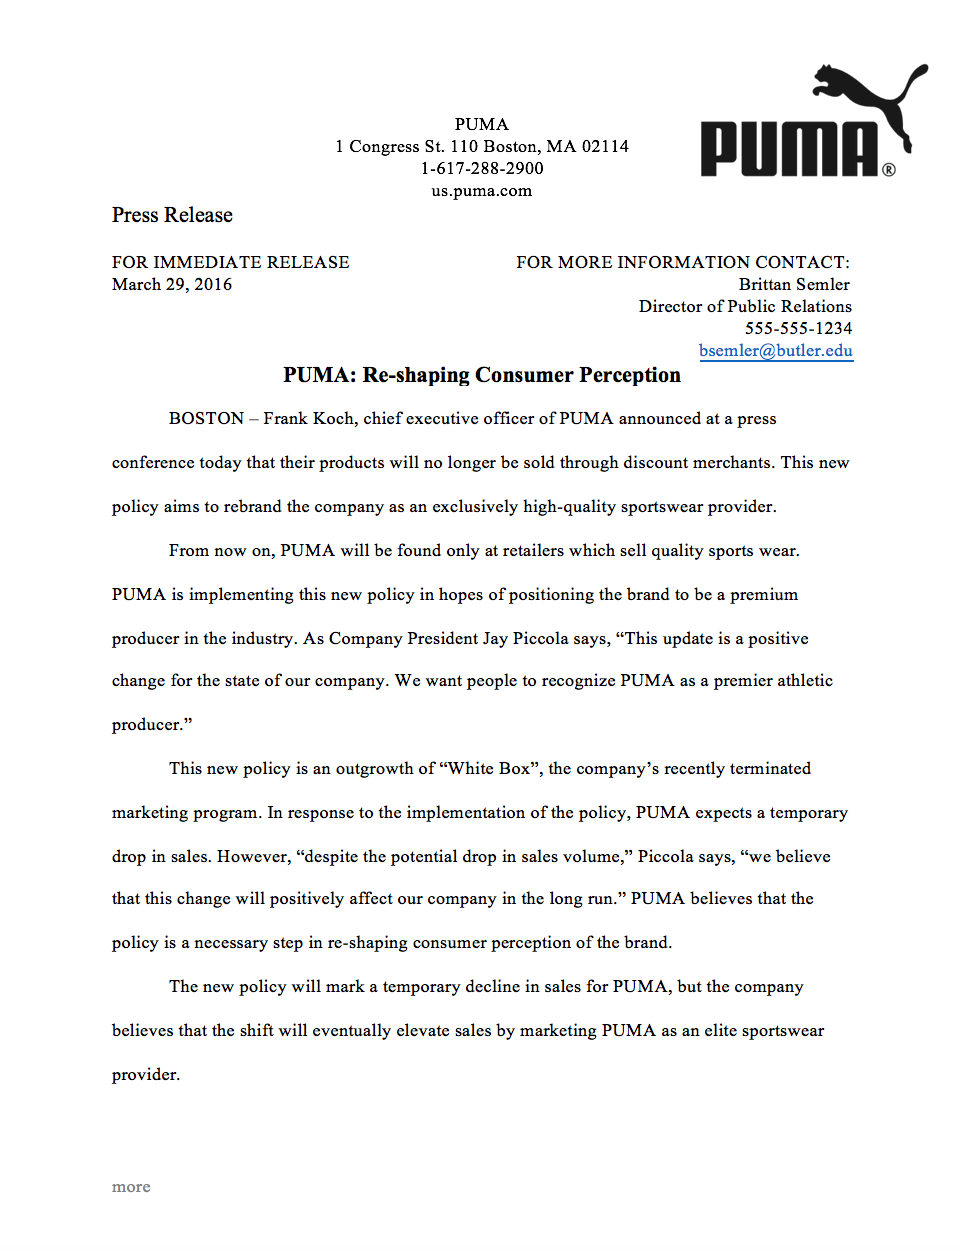 puma press release